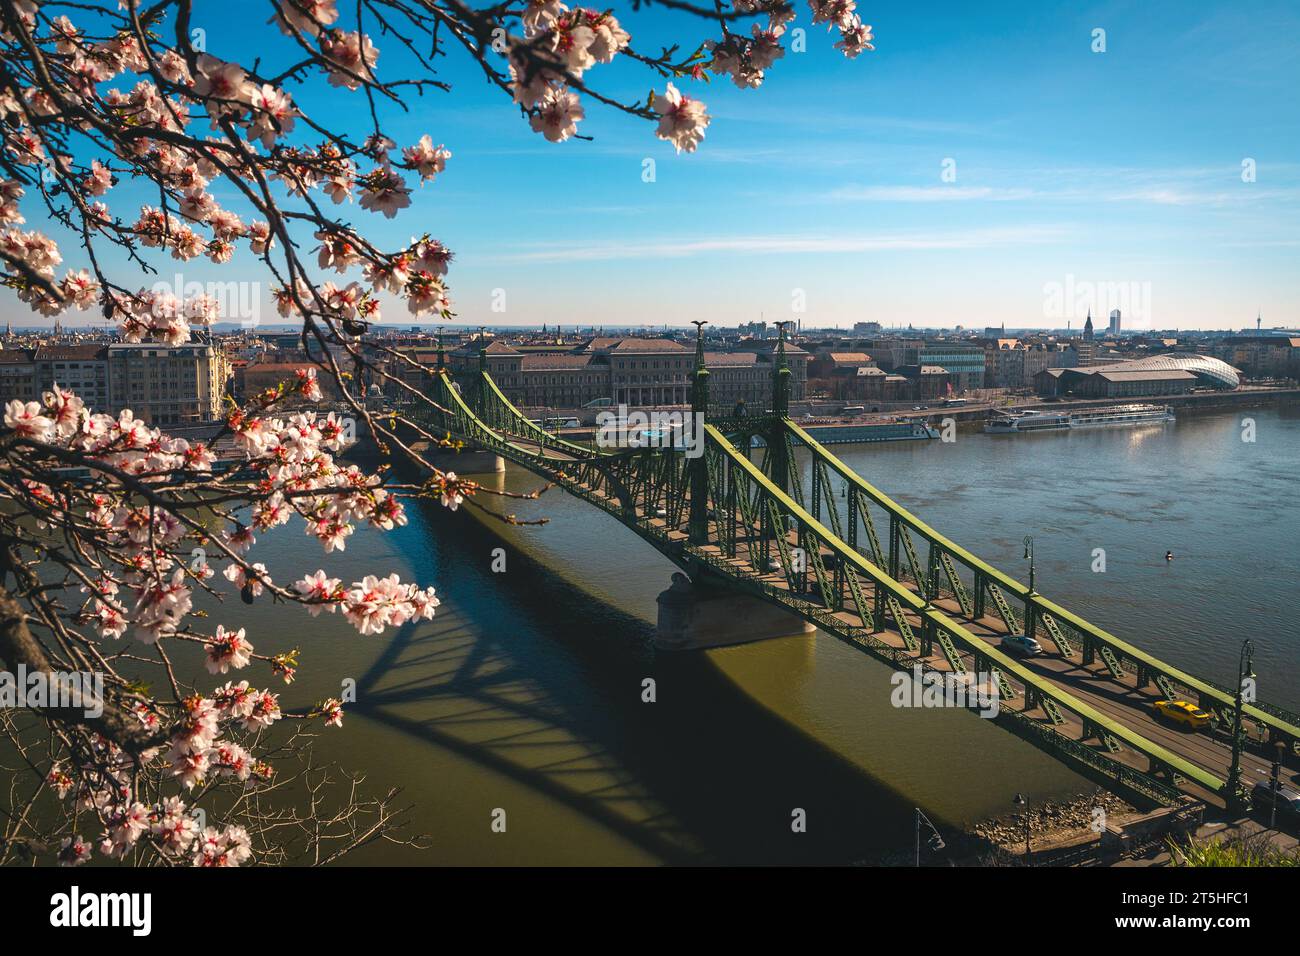 Panorama incroyable avec des branches fleuries de printemps fraîches et célèbre pont de la liberté sur le Danube, Budapest, Hongrie, Europe Banque D'Images